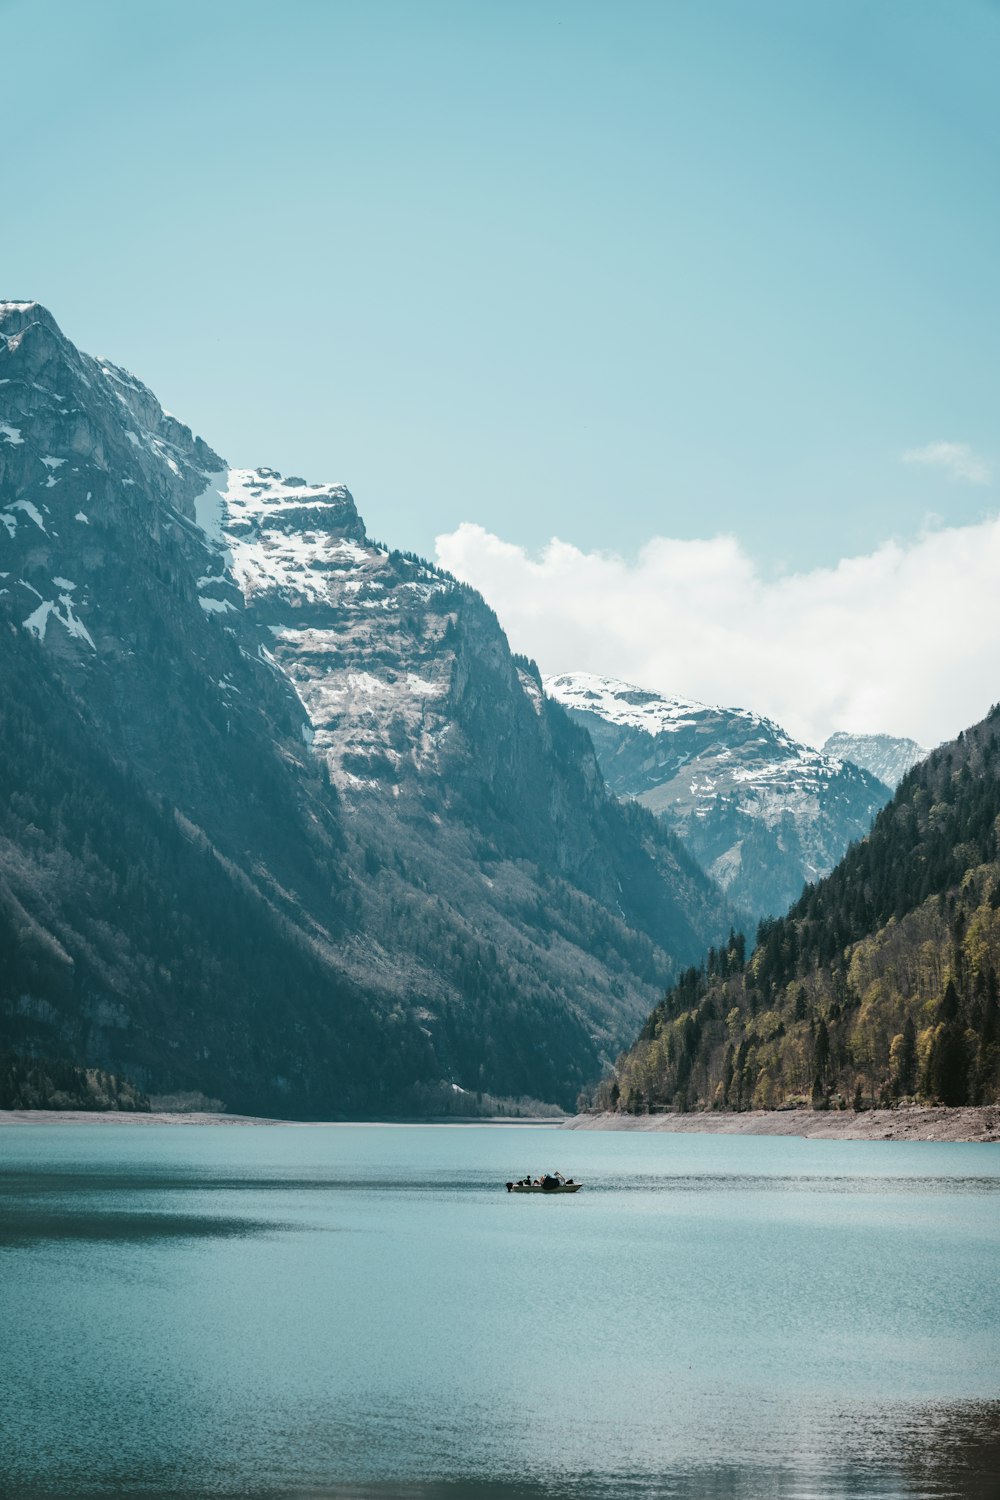 Una barca in un lago con le montagne sullo sfondo